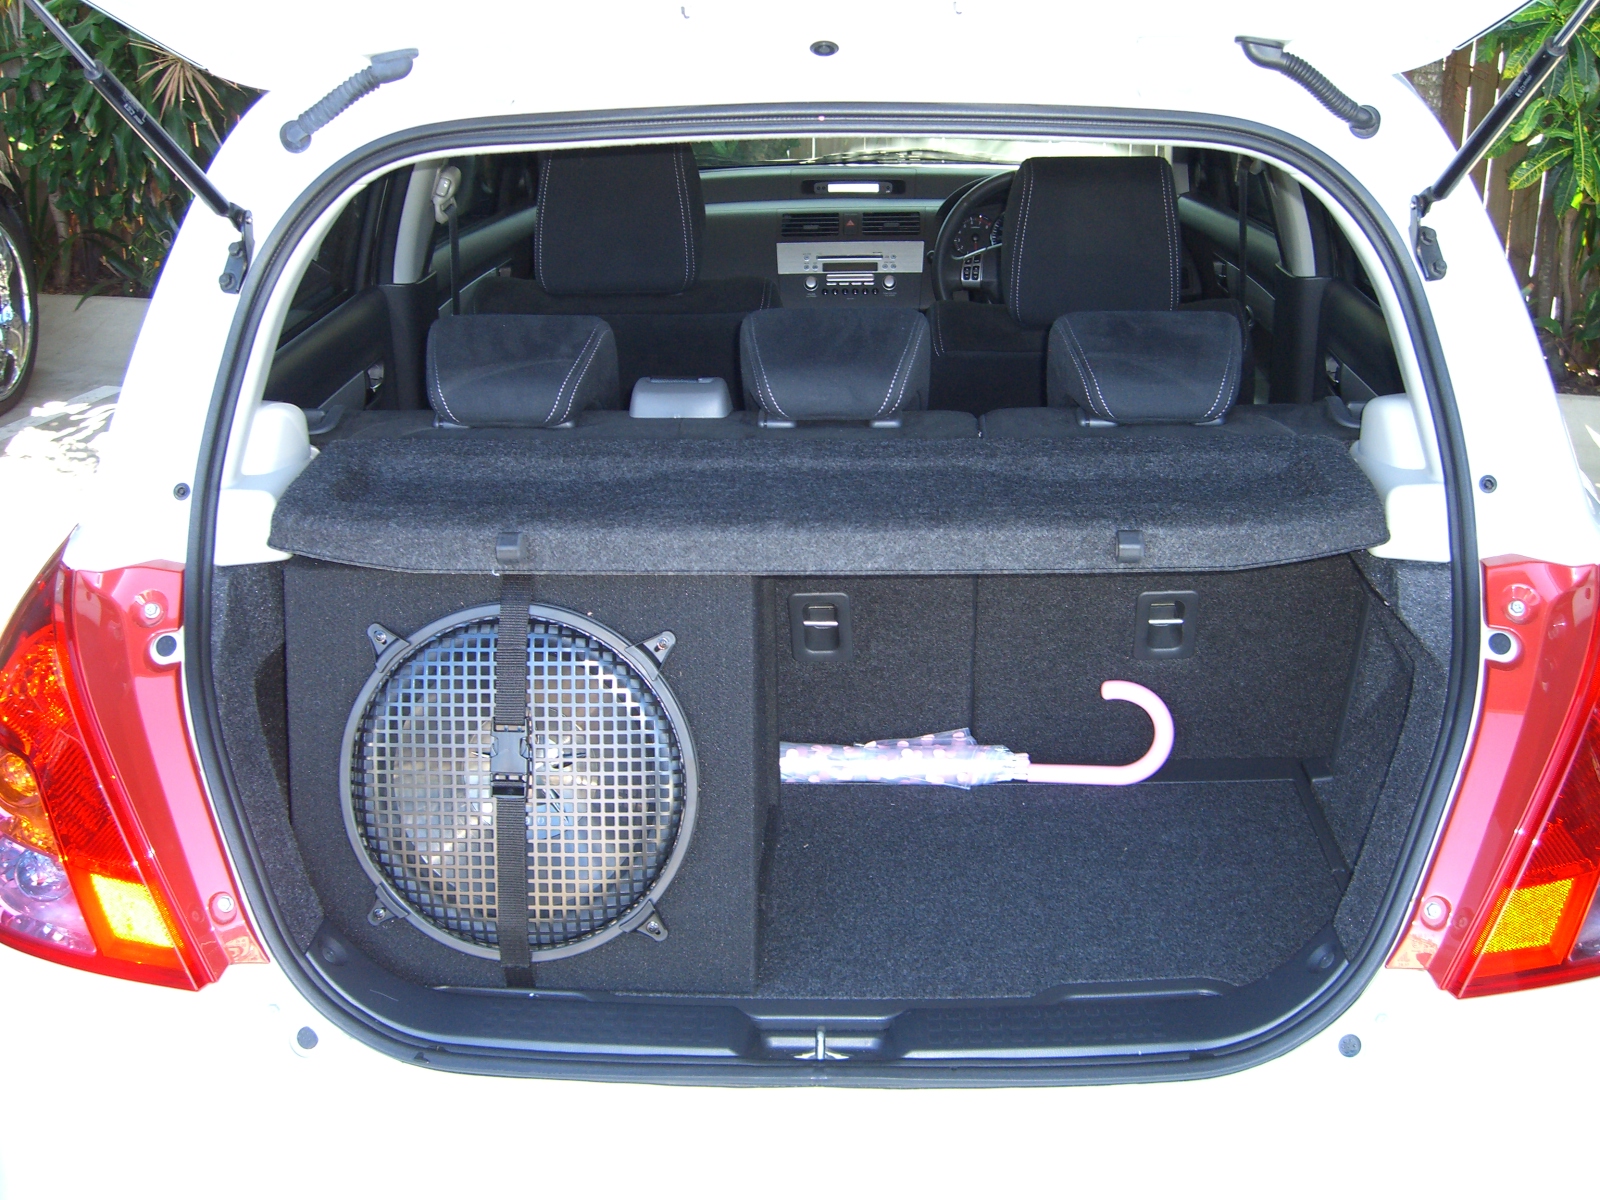 Suzuki Swft 2010 12inch subwoofer amplifier install